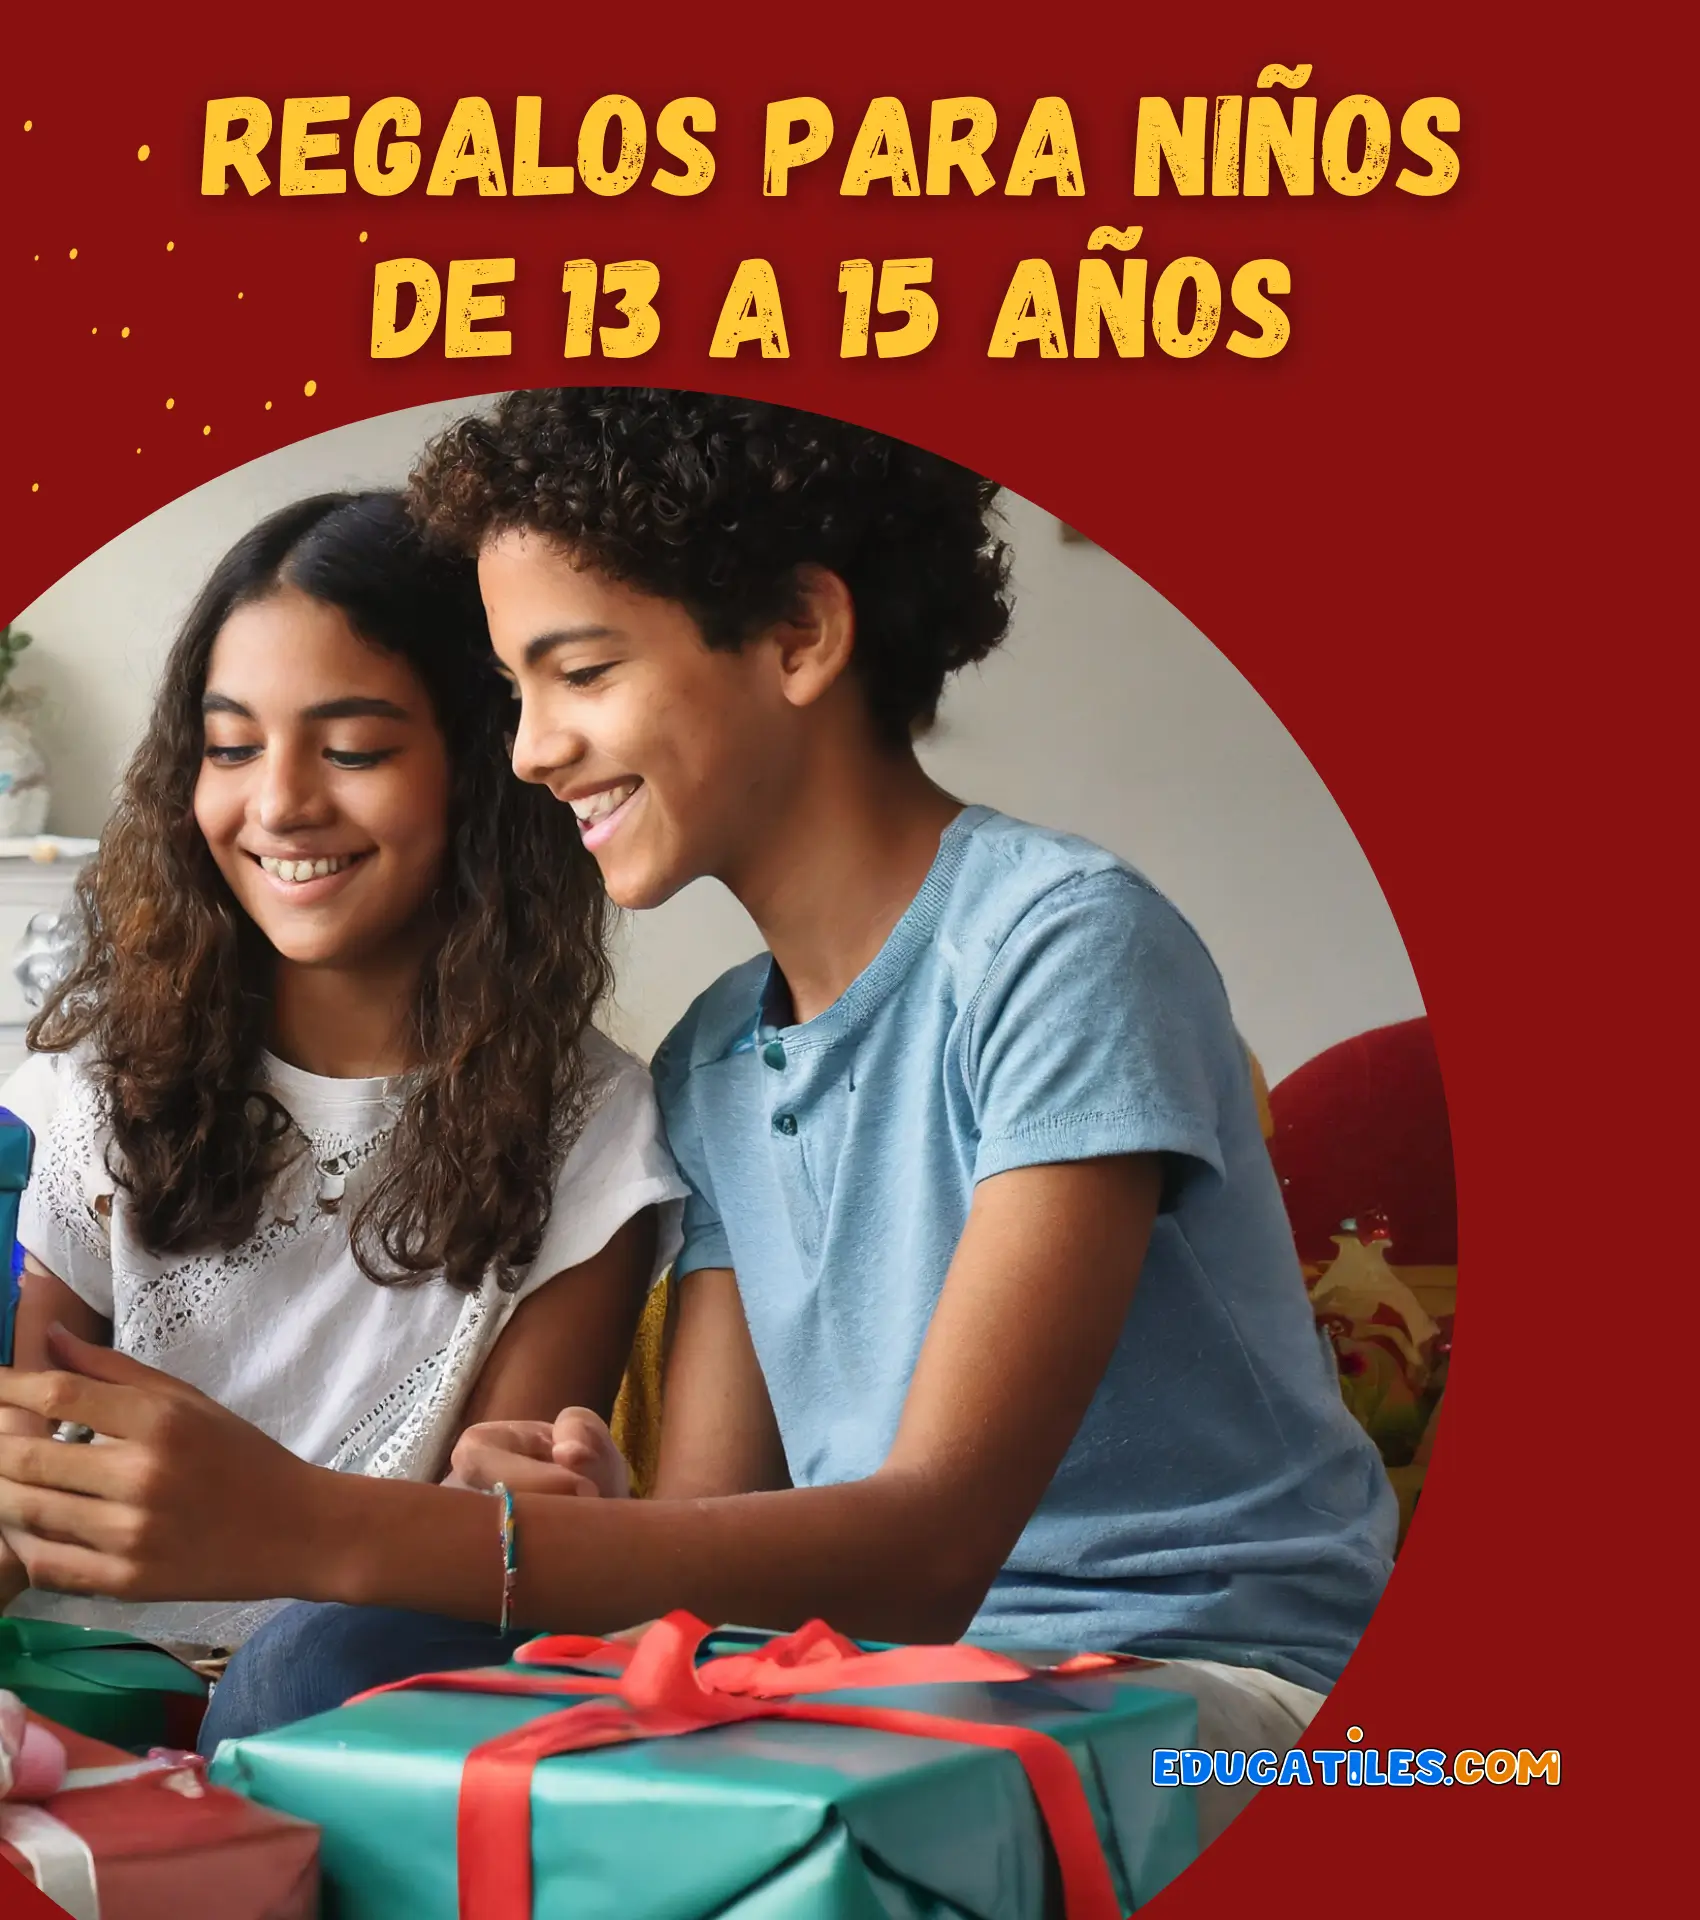 Regalos para niños de 13 a 15 años - Cuentos en español